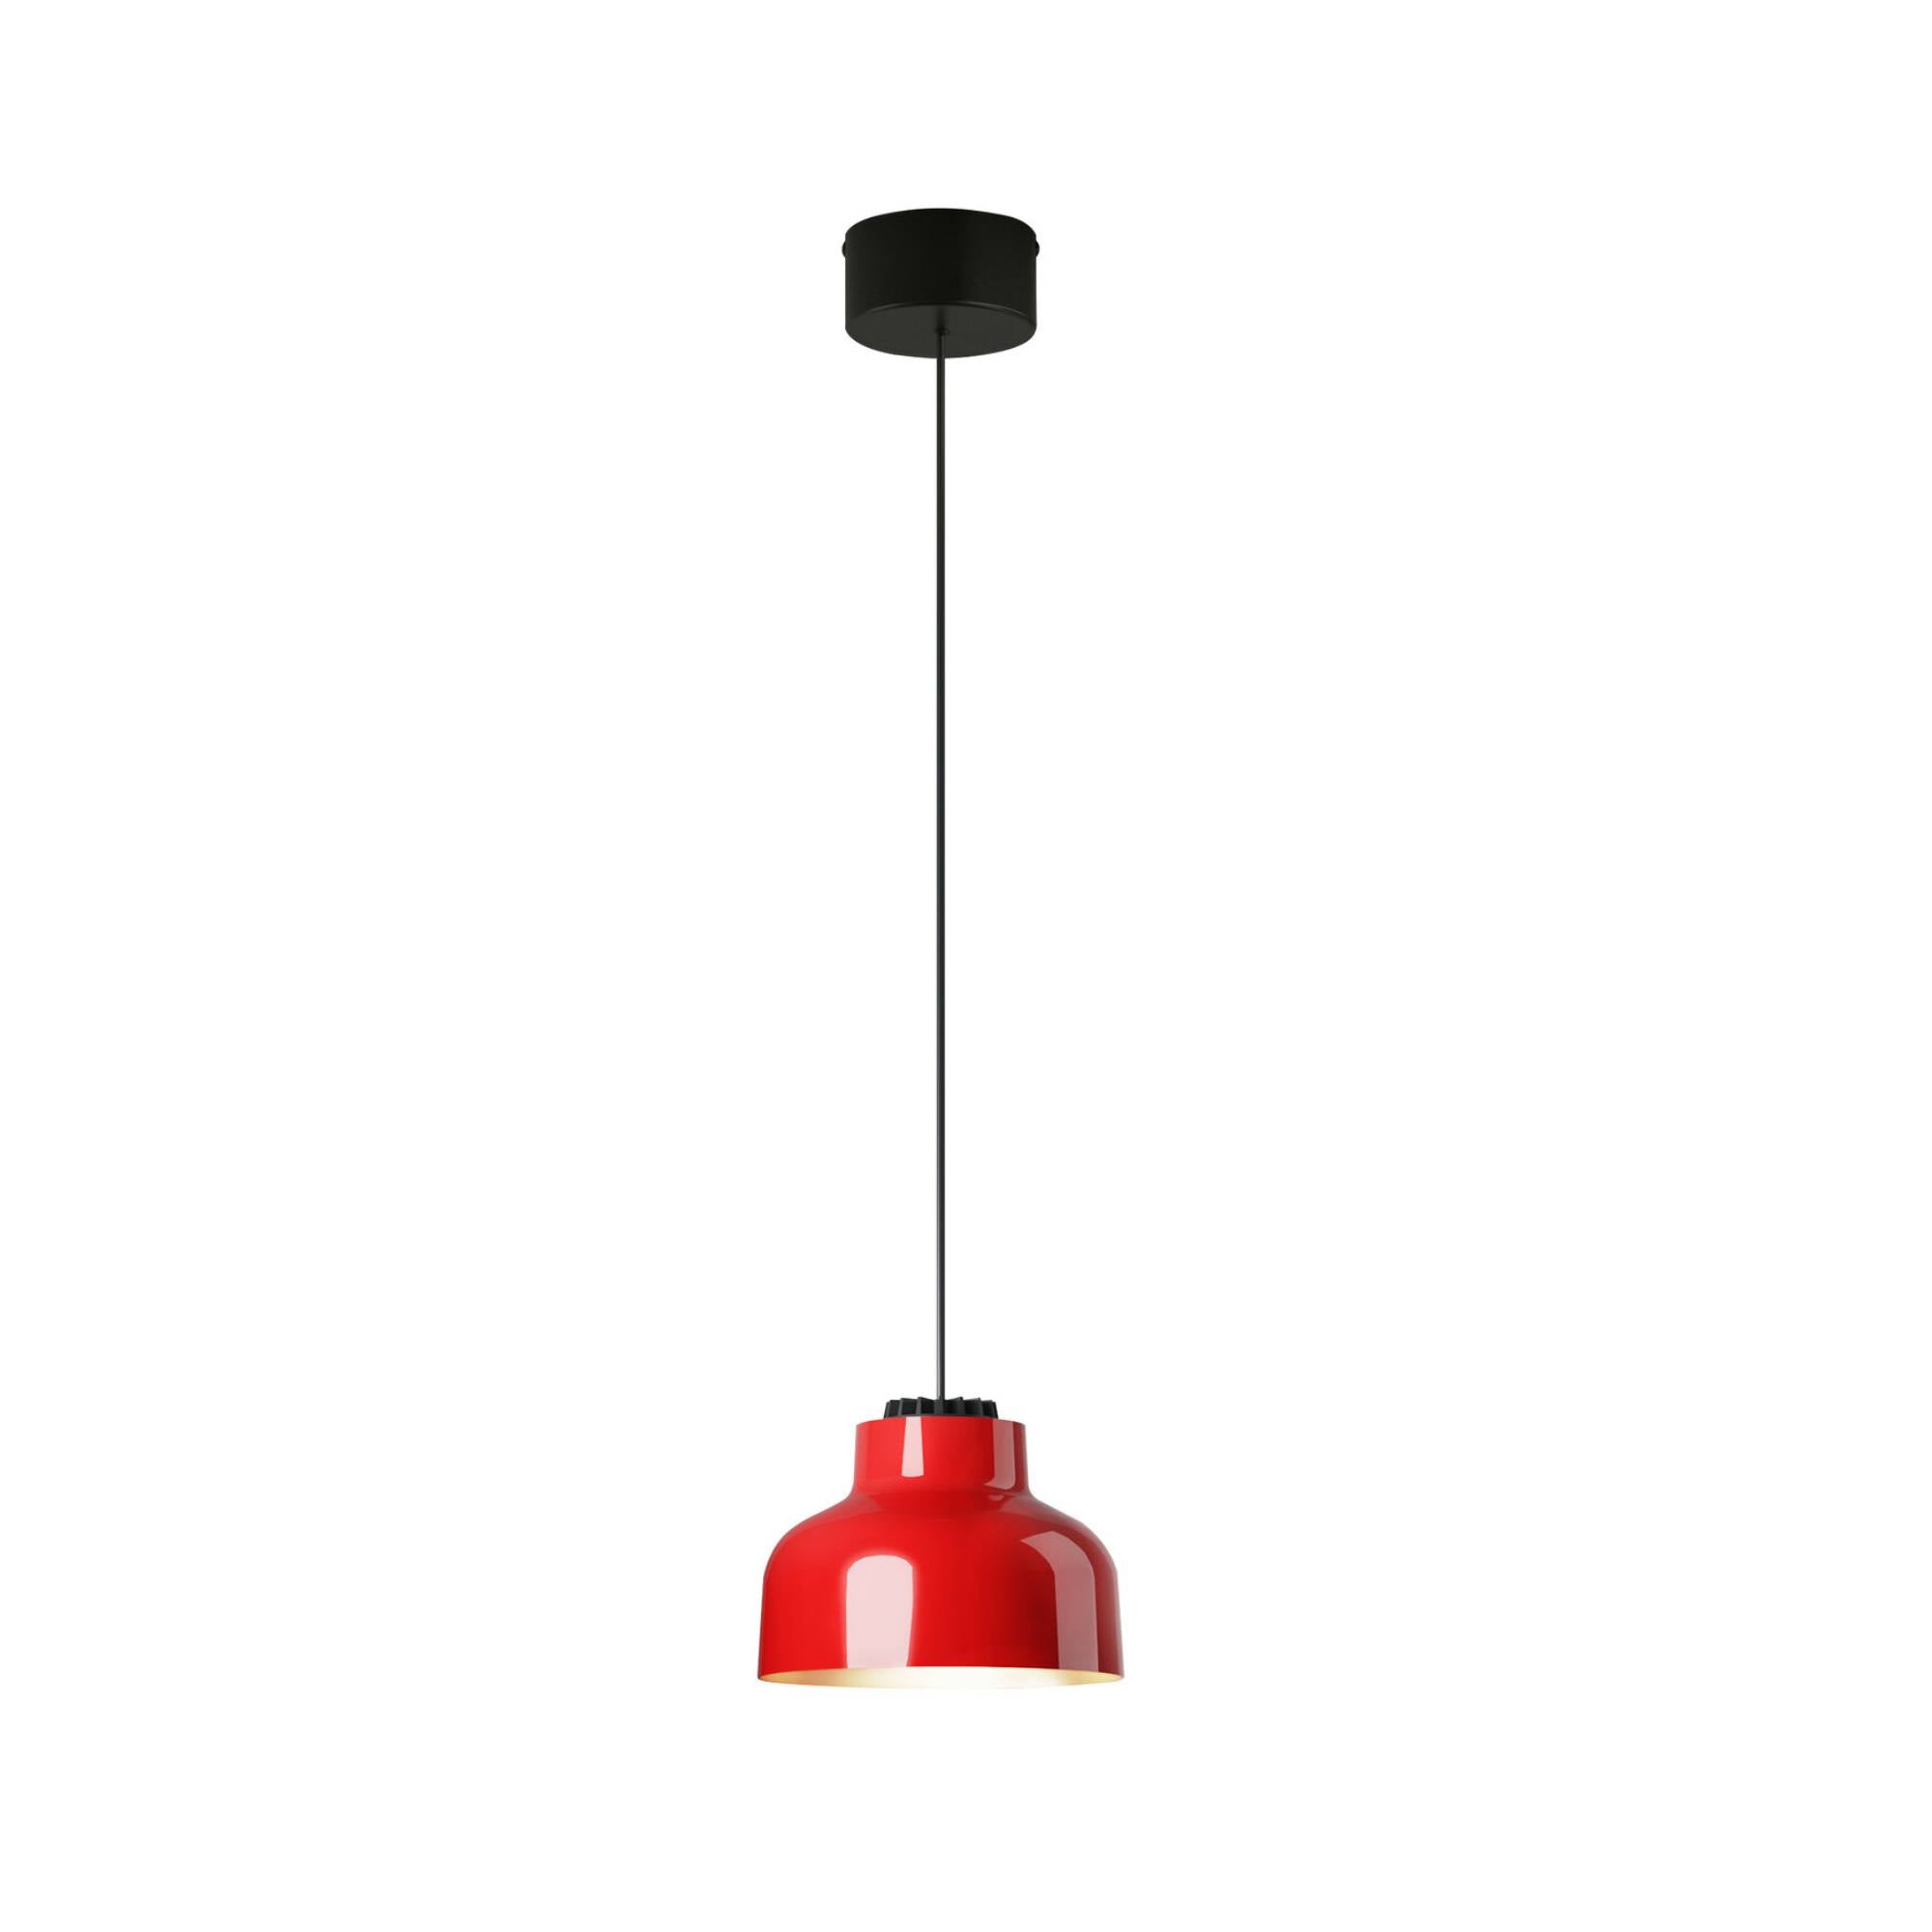 M64 Pendant Lamp: Brilliant Red Aluminum + Black